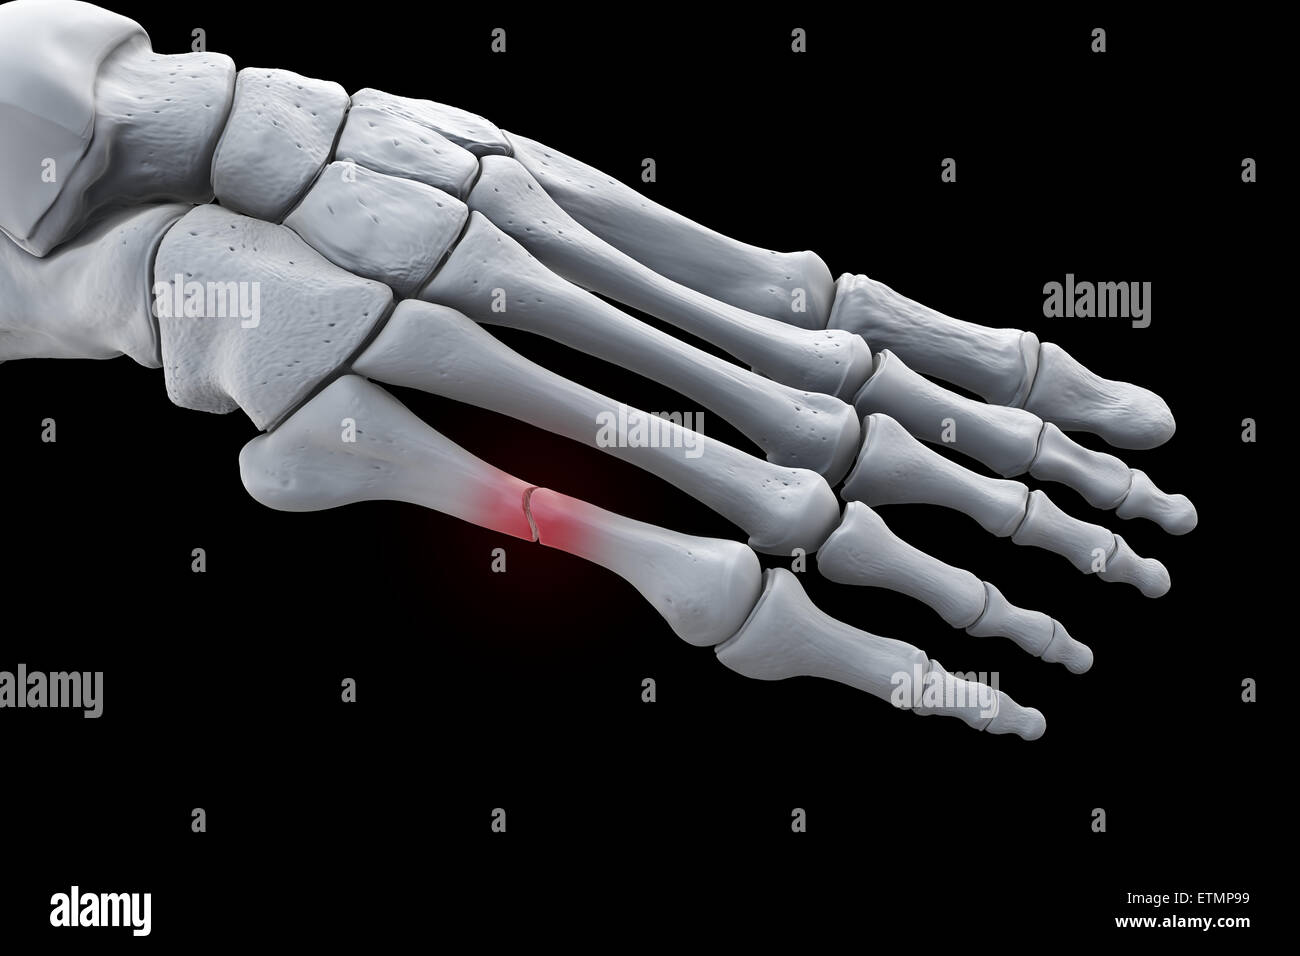 Ilustración que muestra los huesos del pie con una rotura en un metatarsiano resaltada. Foto de stock